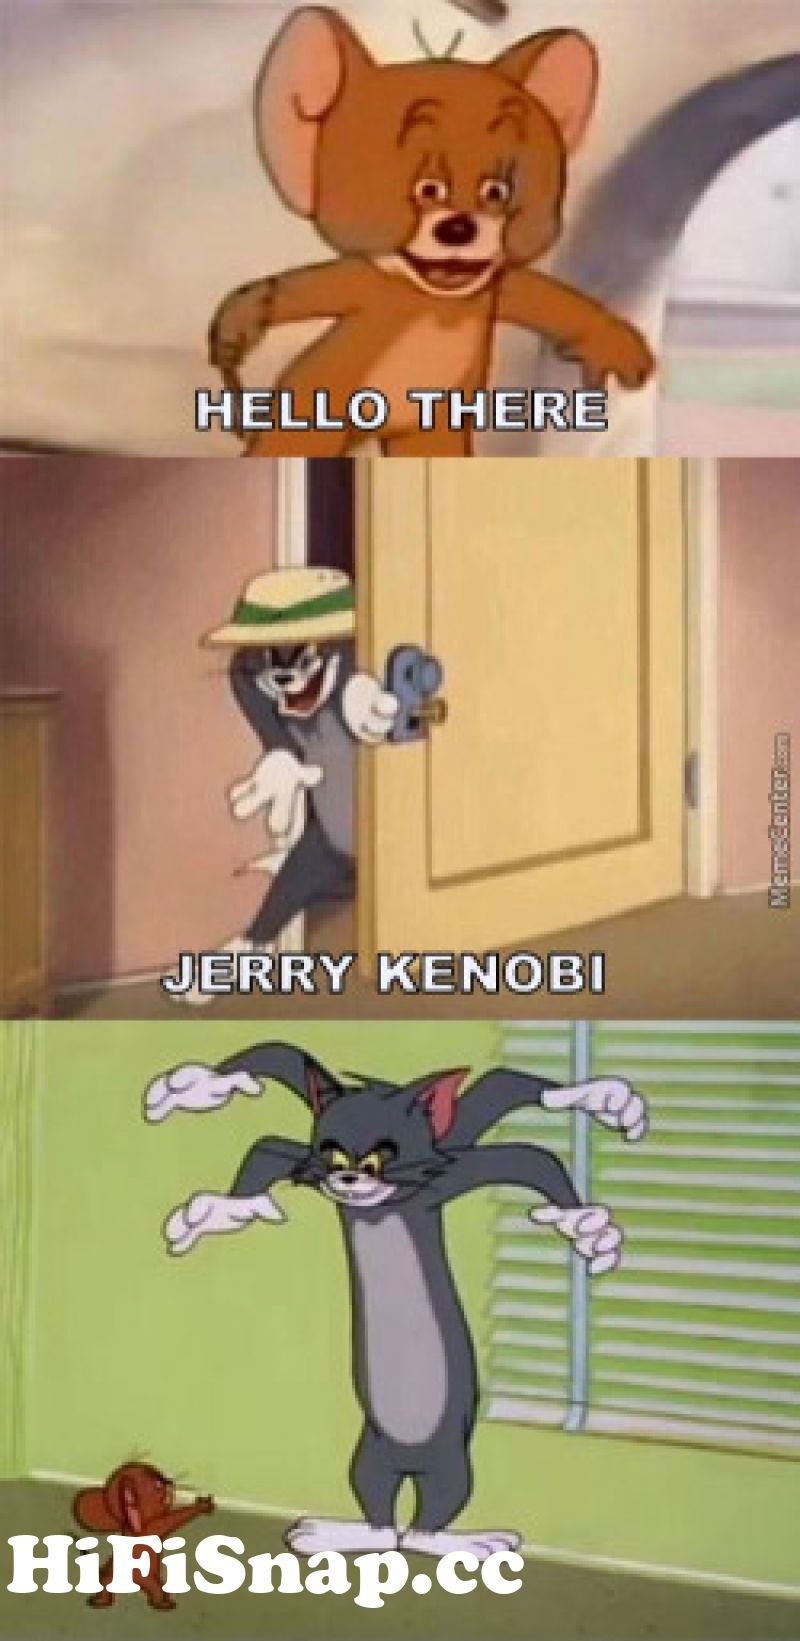 Том и Джерри мемы